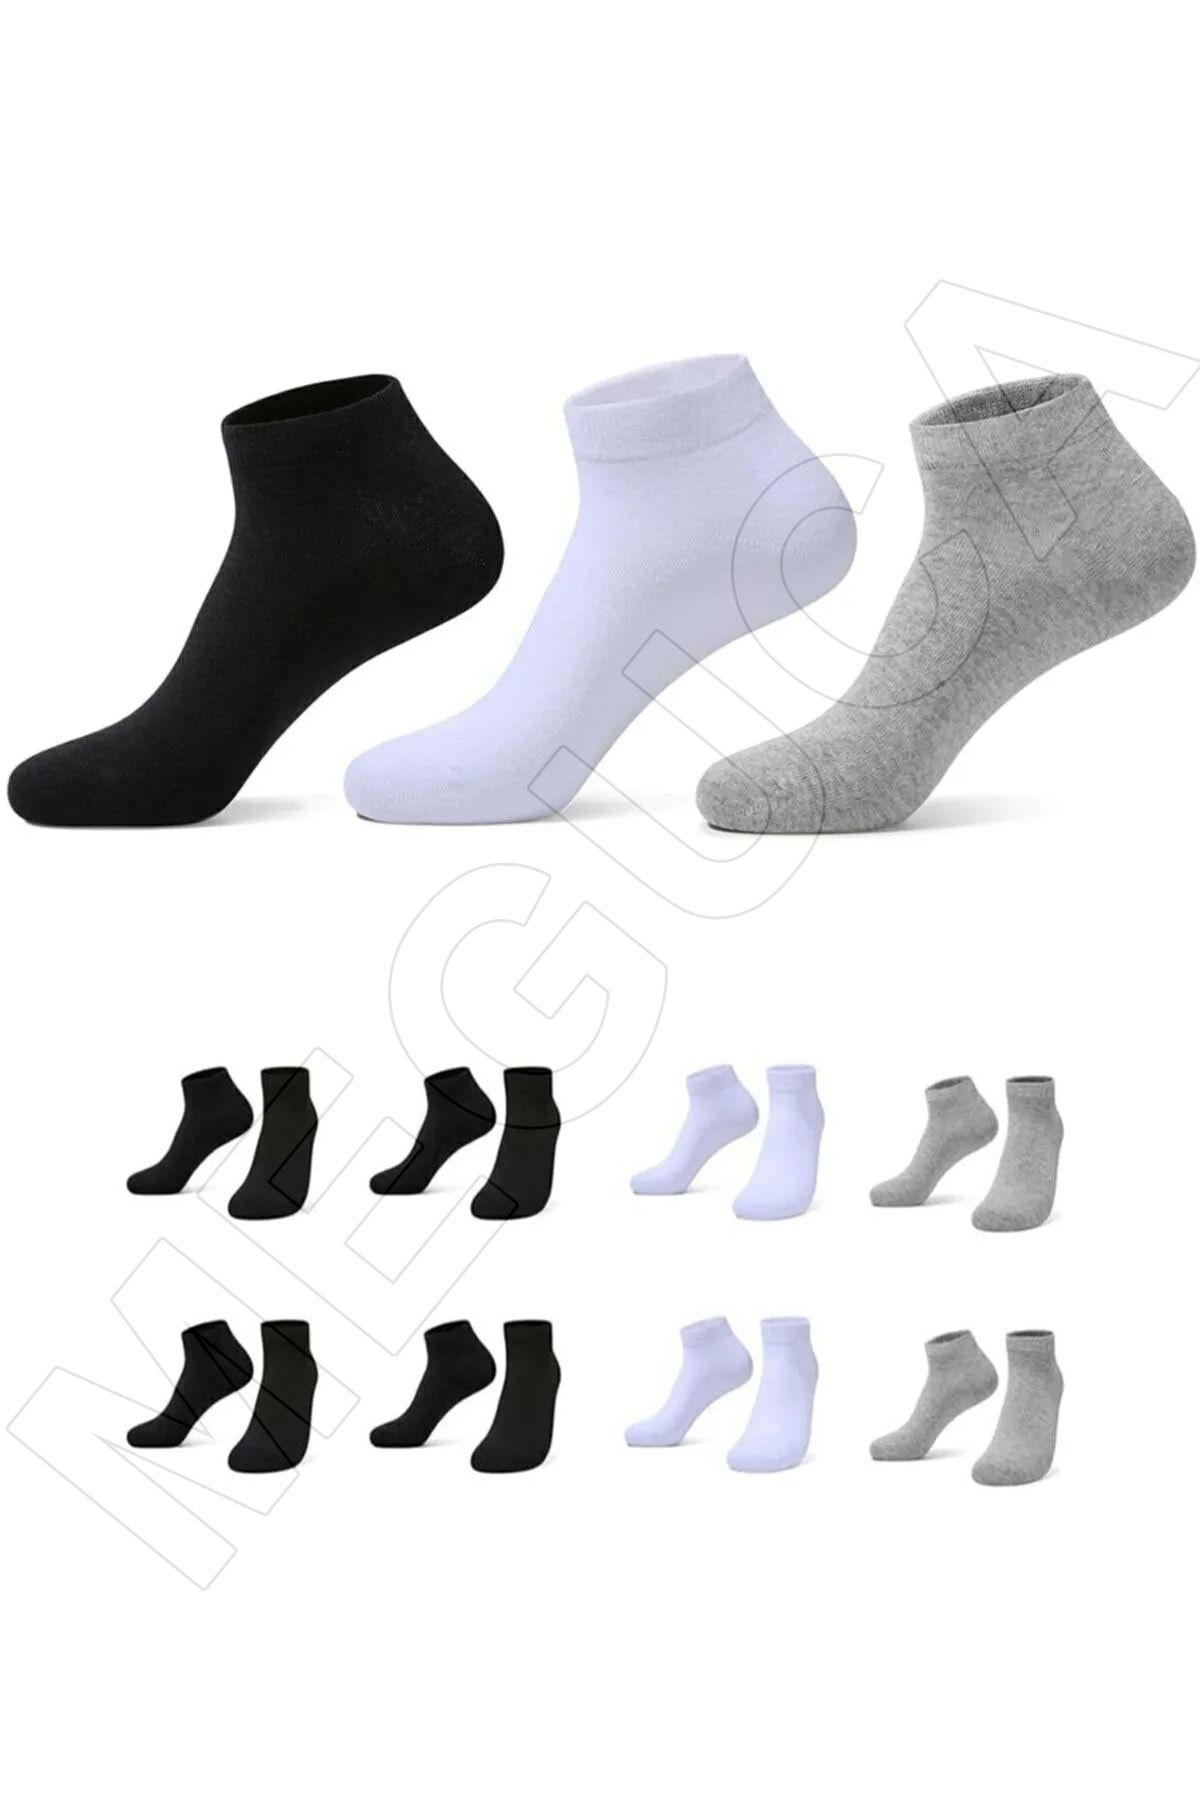 Meguca Socks 8 Çift Ekonomik Paket Patik Çorap Siyah-beyaz-gri Karışık Renk